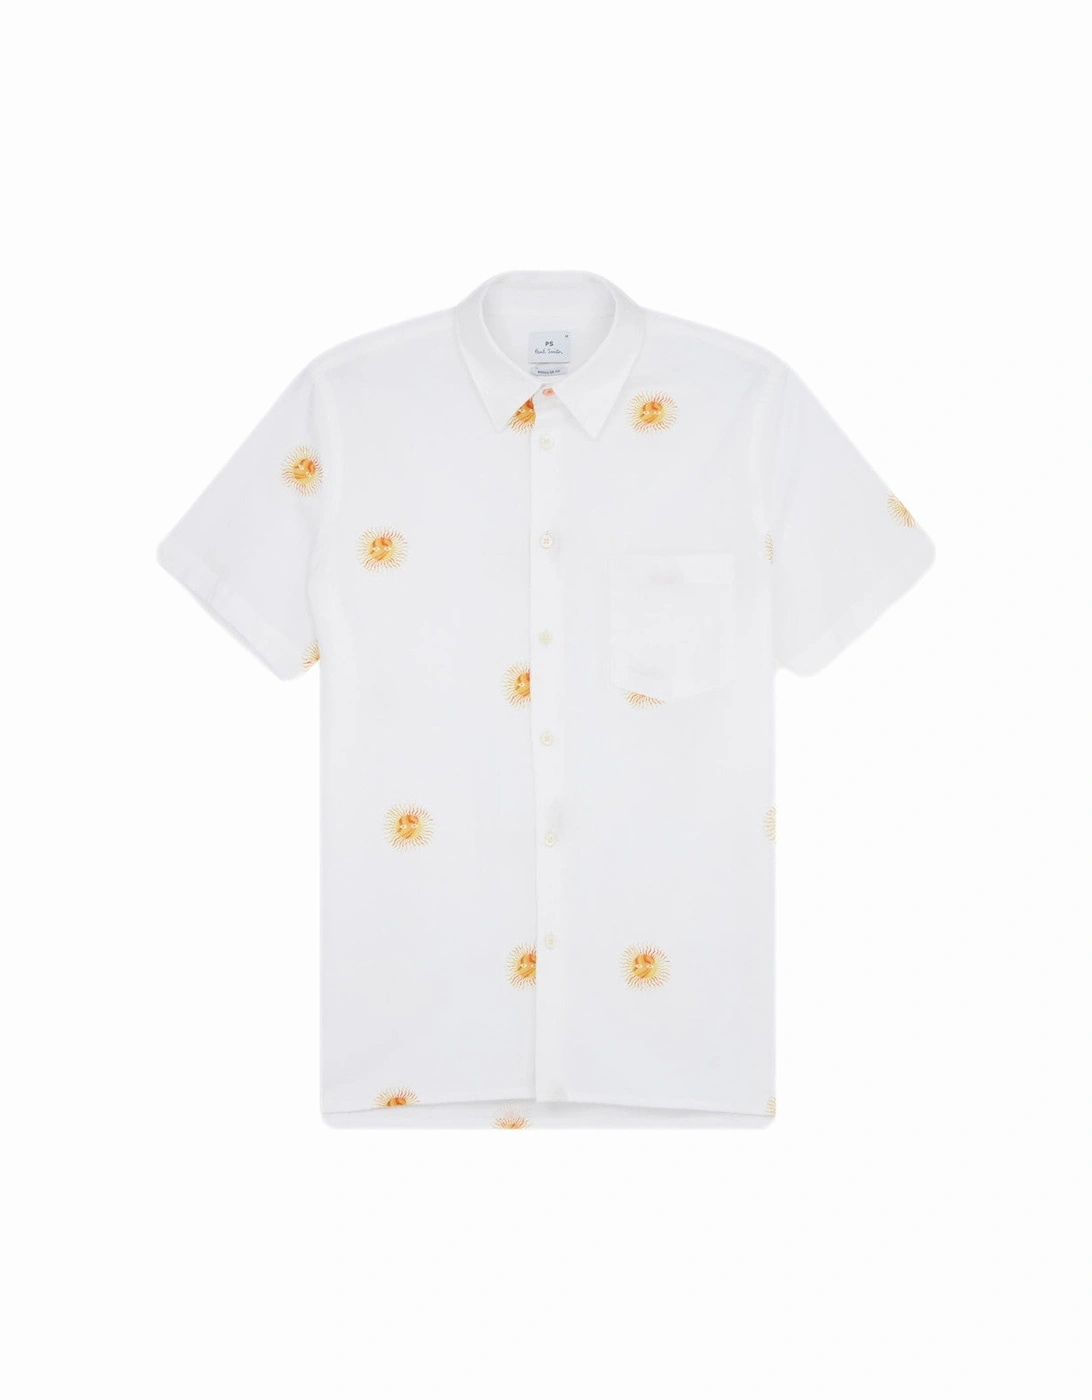 PS SS Regular Fit Sun Shirt 01 WHITE, 5 of 4